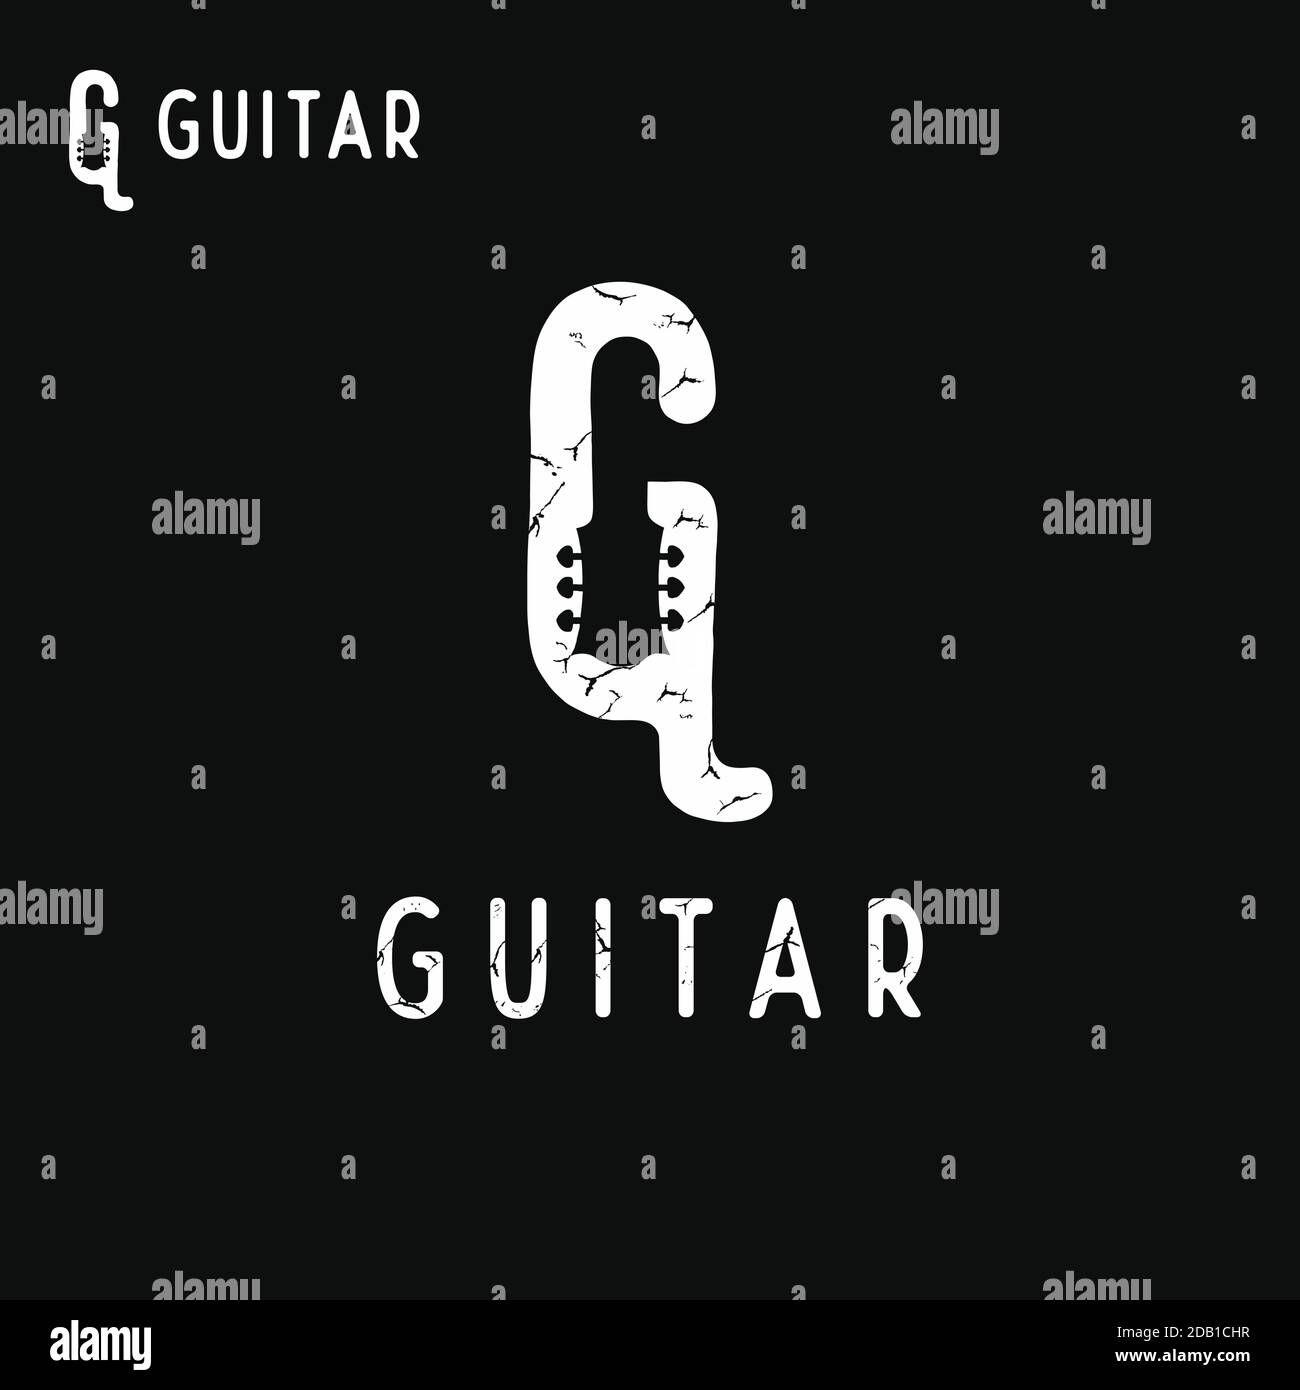 Paletta chitarra elettrica Immagini Vettoriali Stock - Pagina 2 - Alamy